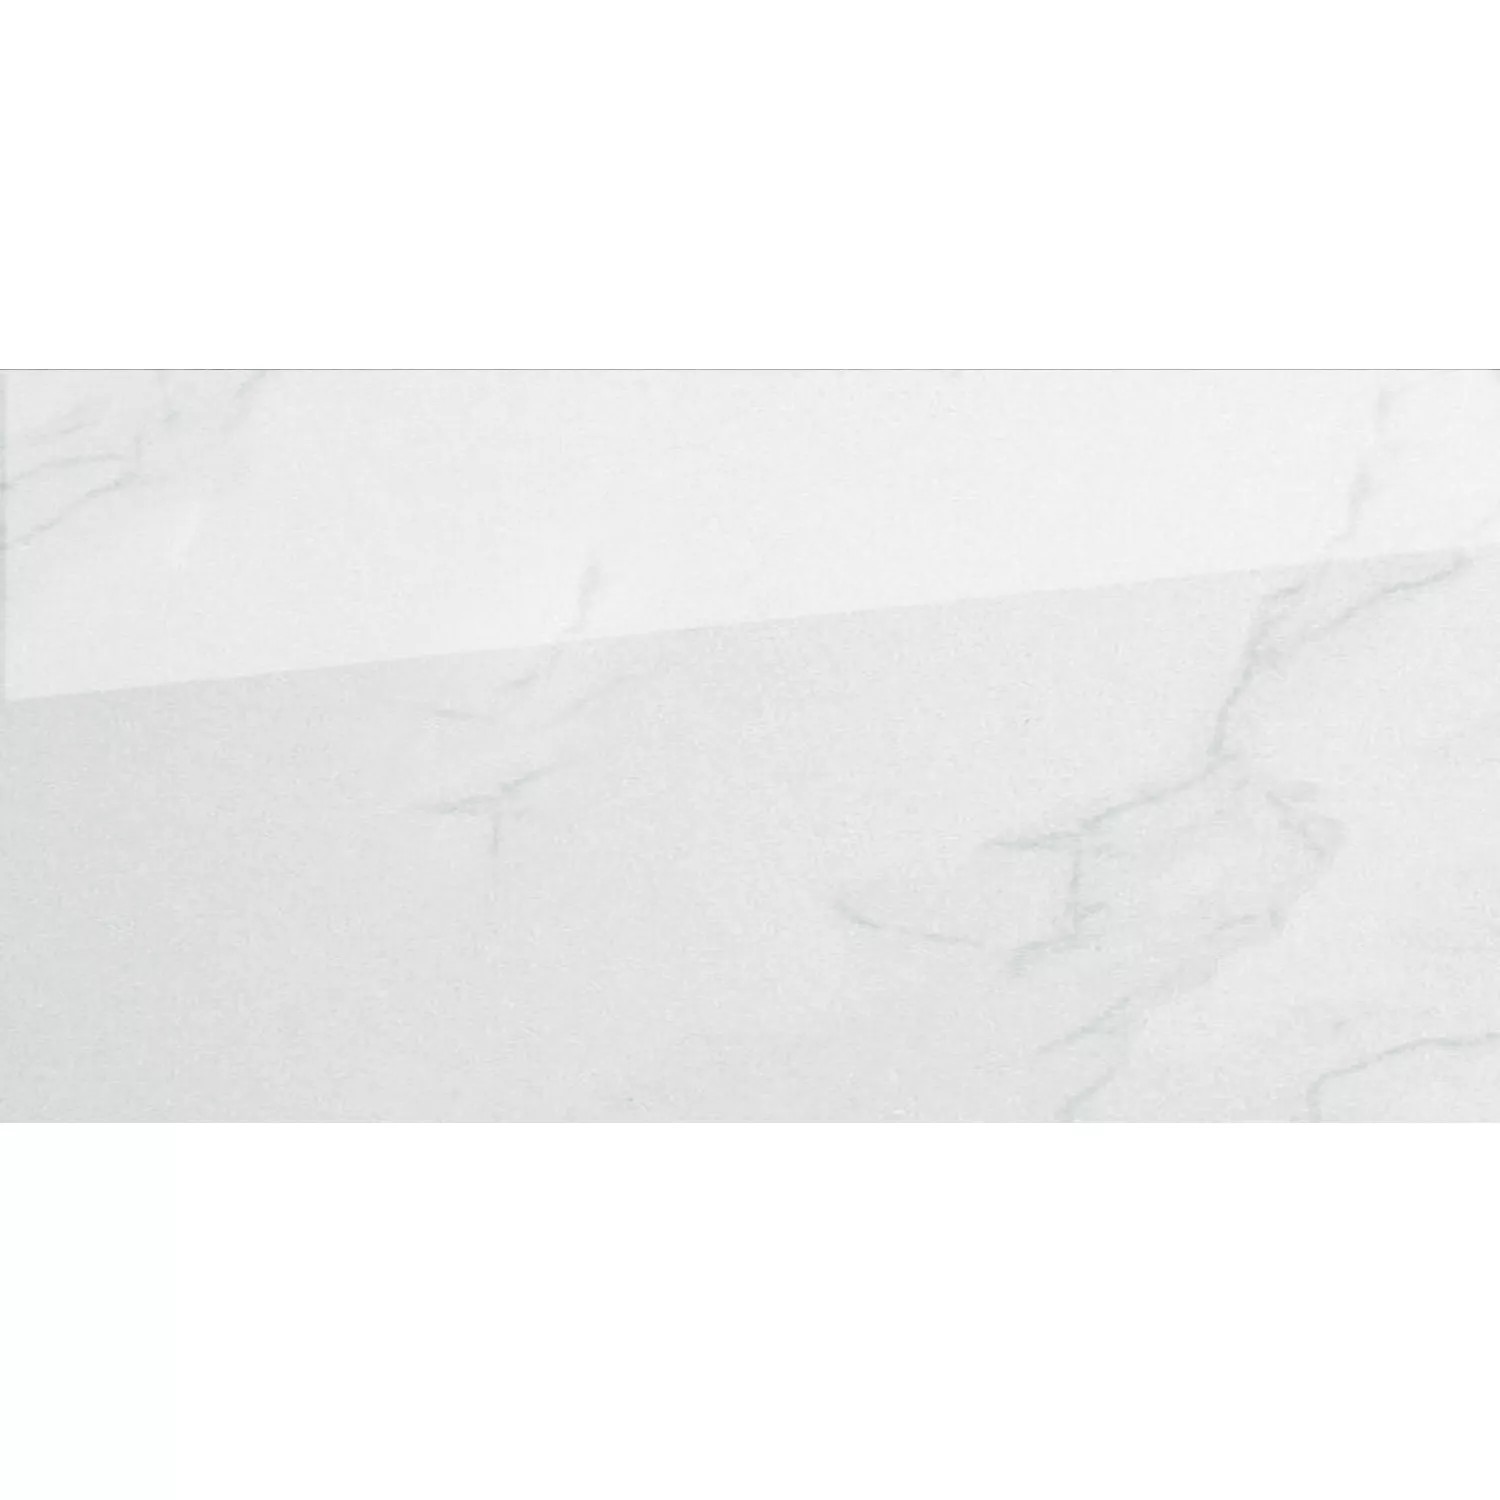 Próbka Płytki Podłogowe Kamień Naturalny Optyka Ephesos Biały 30x60cm